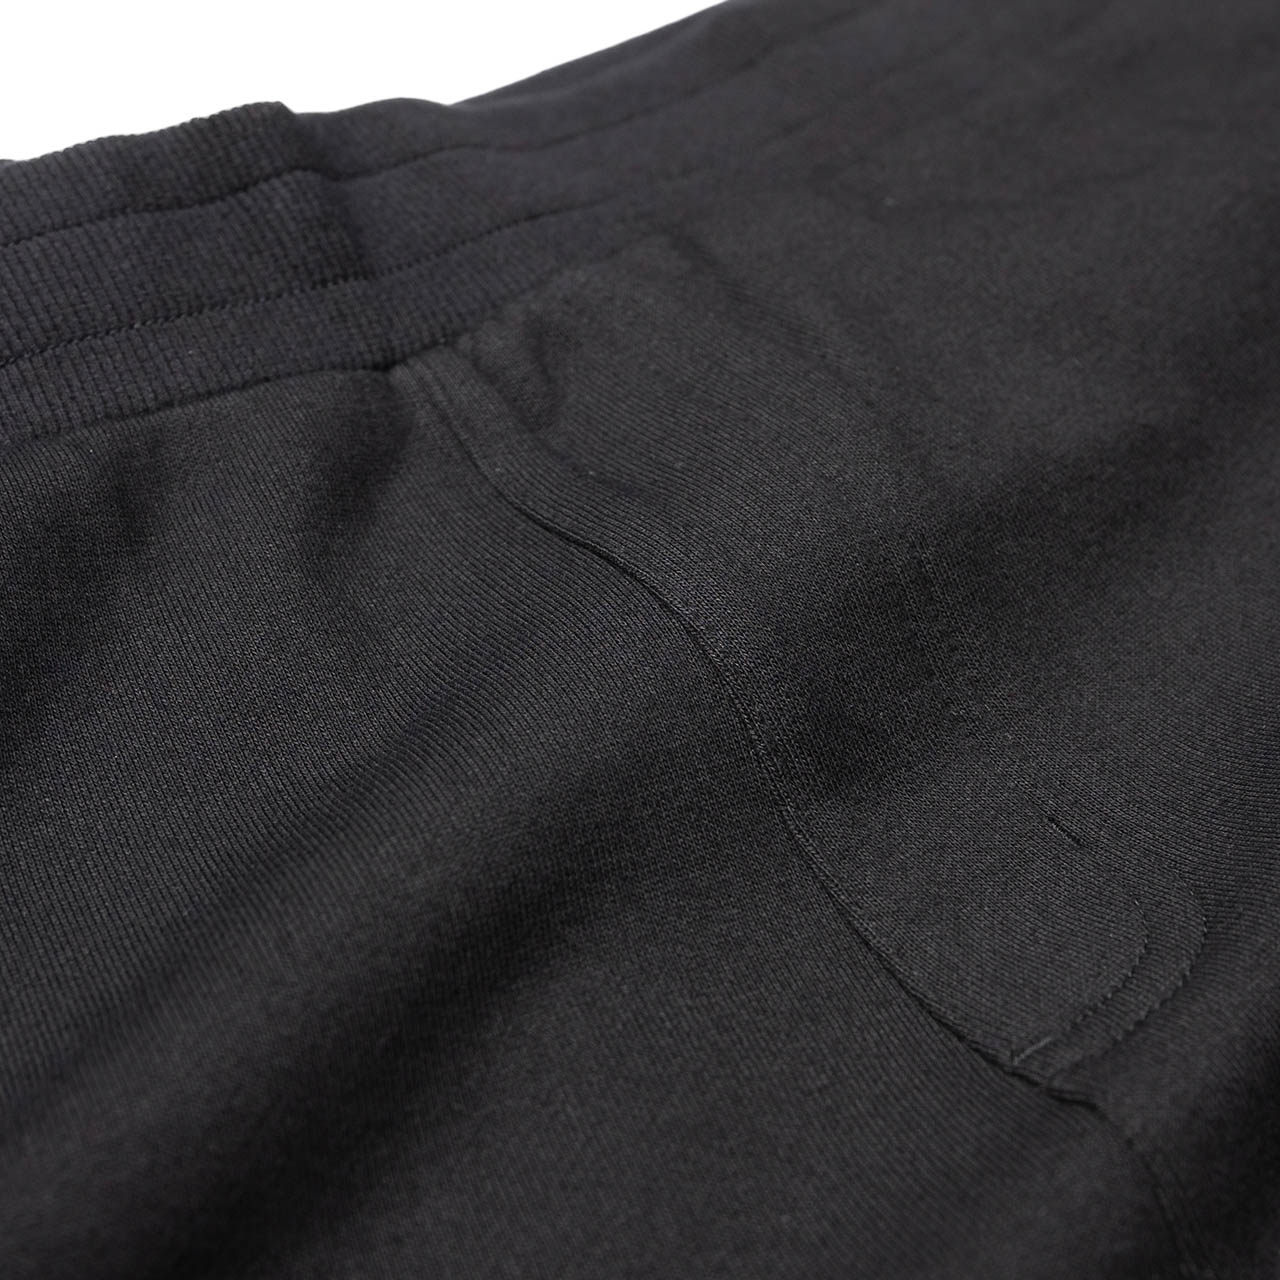 perks and mini b.t.c. jogger sweat pants (black) - 8382-b - a.plus - Image - 5